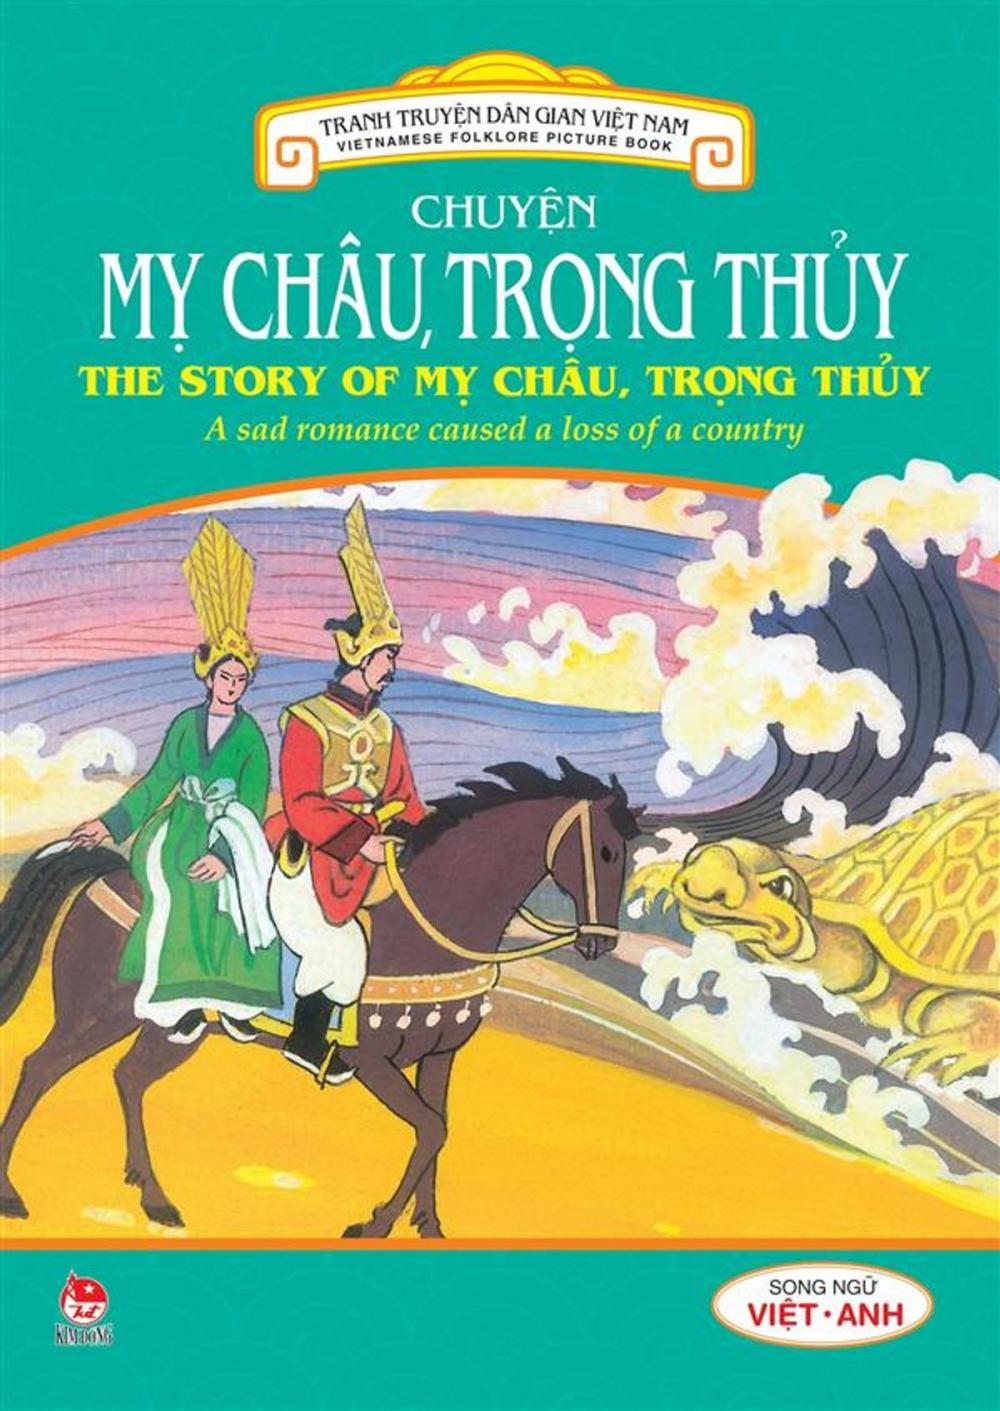 Big bigCover of Truyen tranh dan gian Viet Nam - Chuyen My Chau, Trong Thuy